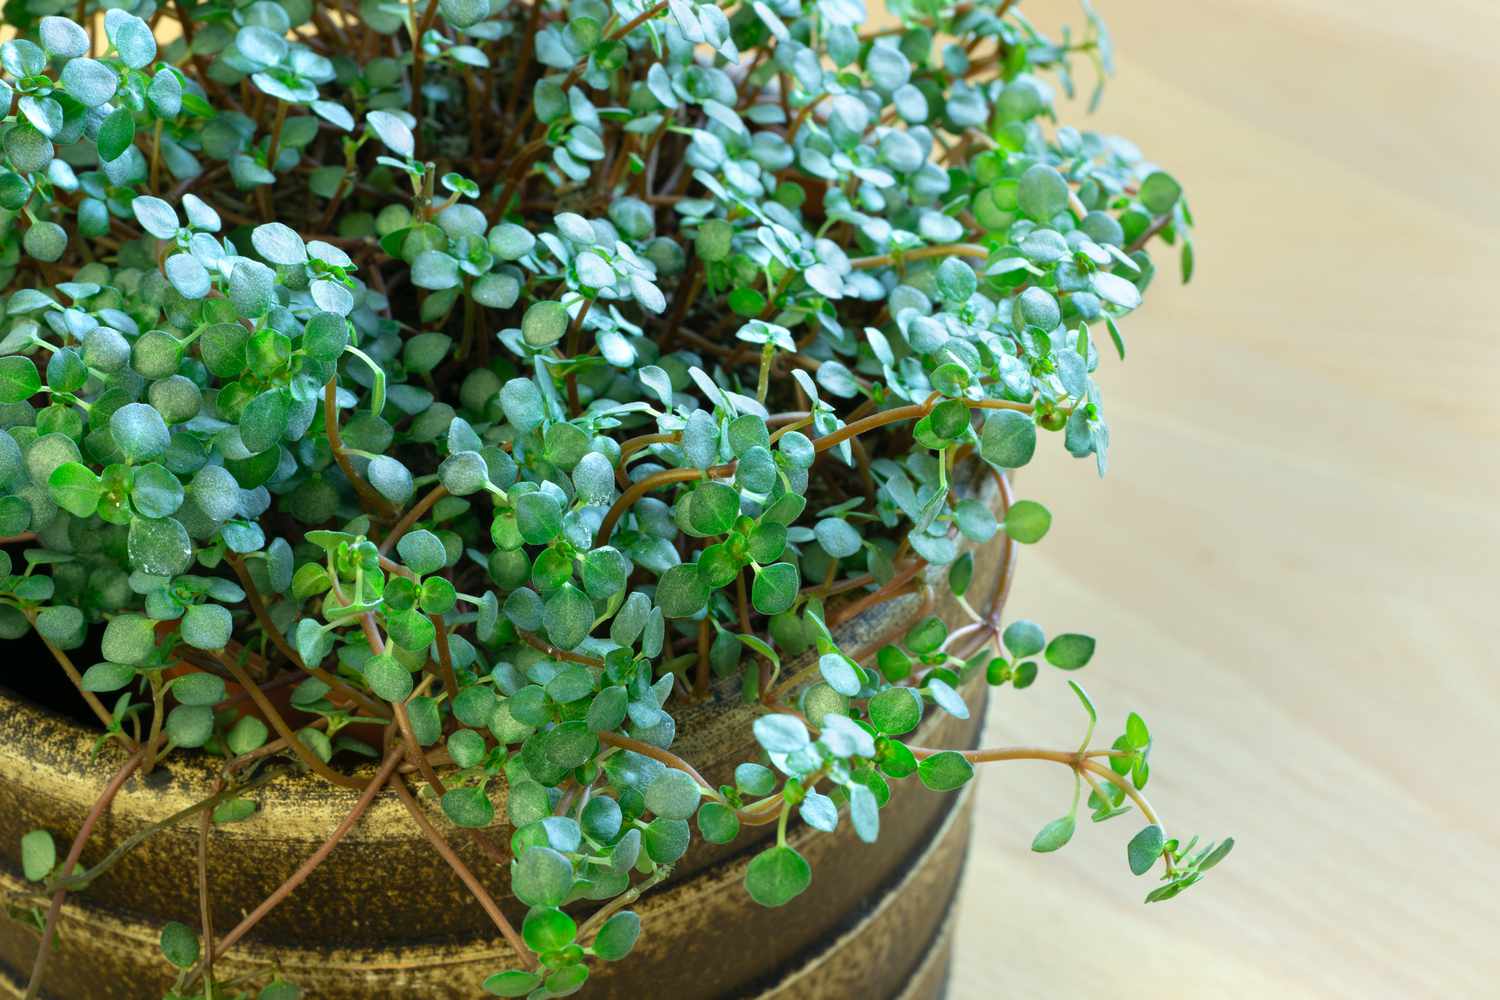 Nahaufnahme einer Pilea glauca Pflanze mit kleinen grünen Blättern und bräunlich-roten Stängeln in einem braunen Topf 